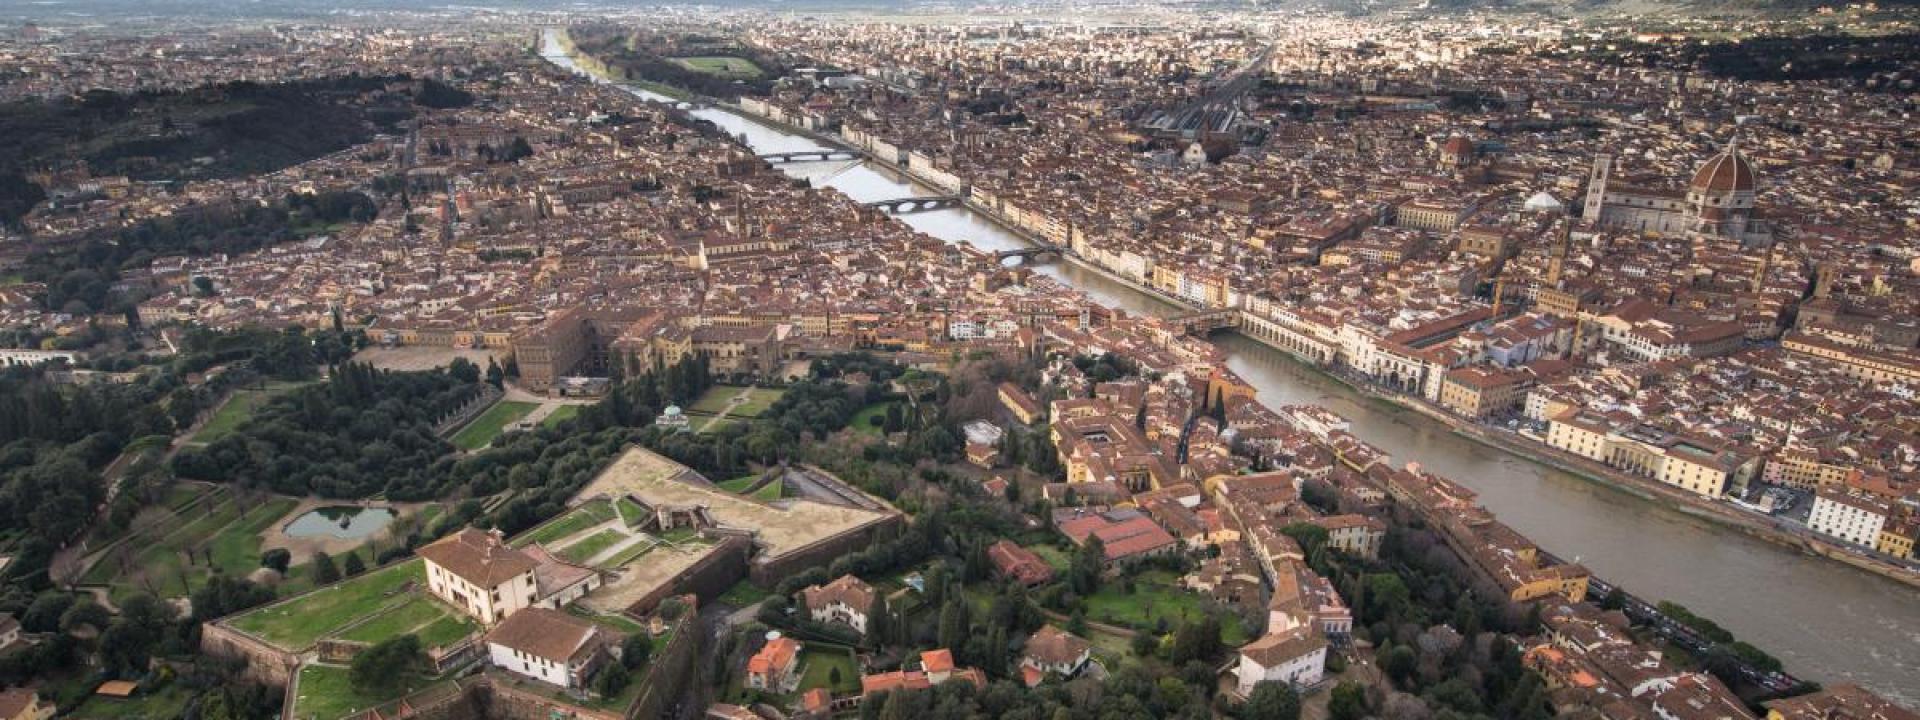 La città metropolitana di Firenze e i suoi ambiti turistici